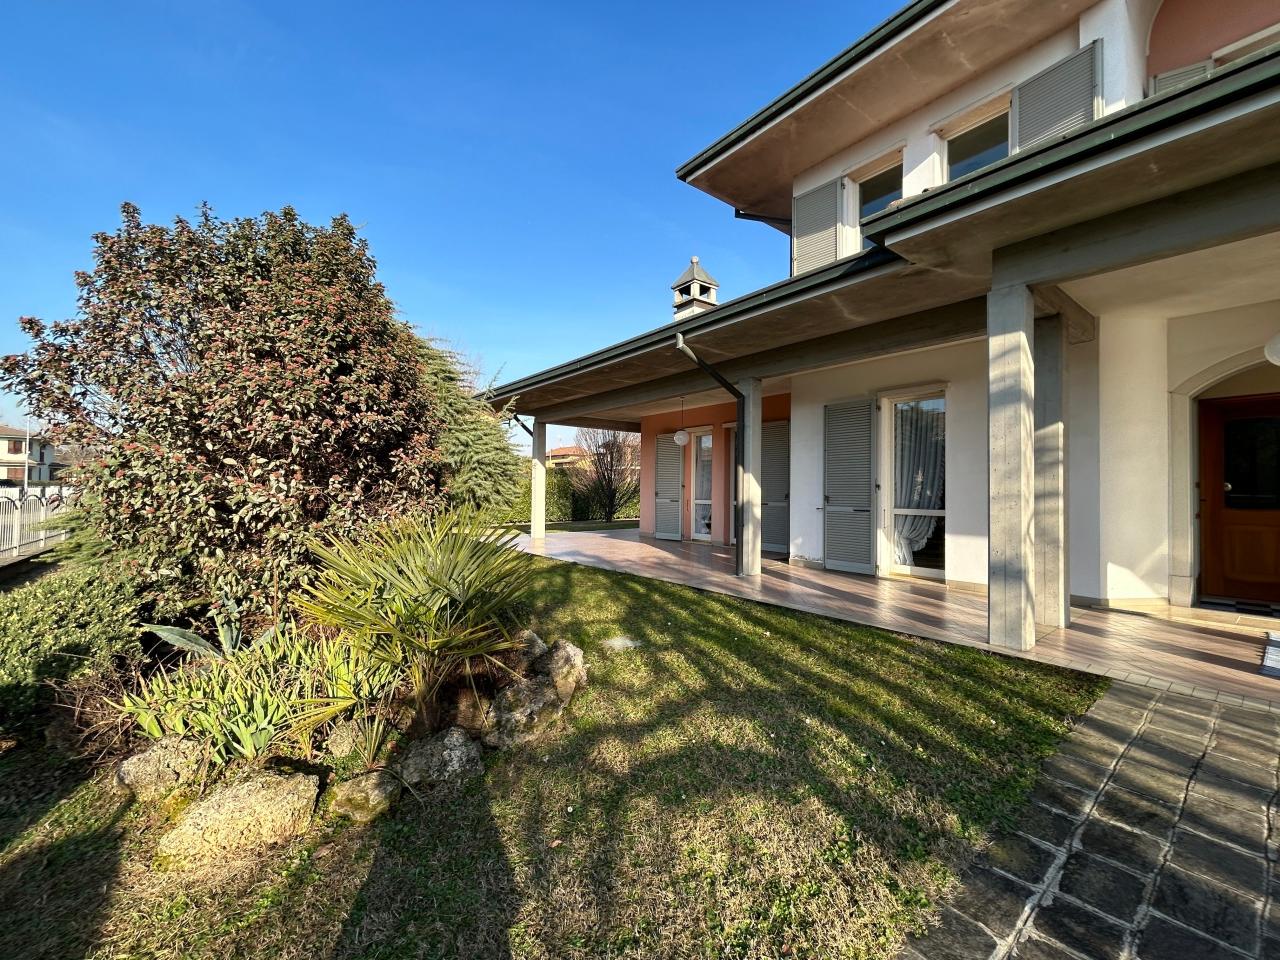 Villa in vendita a Pontoglio